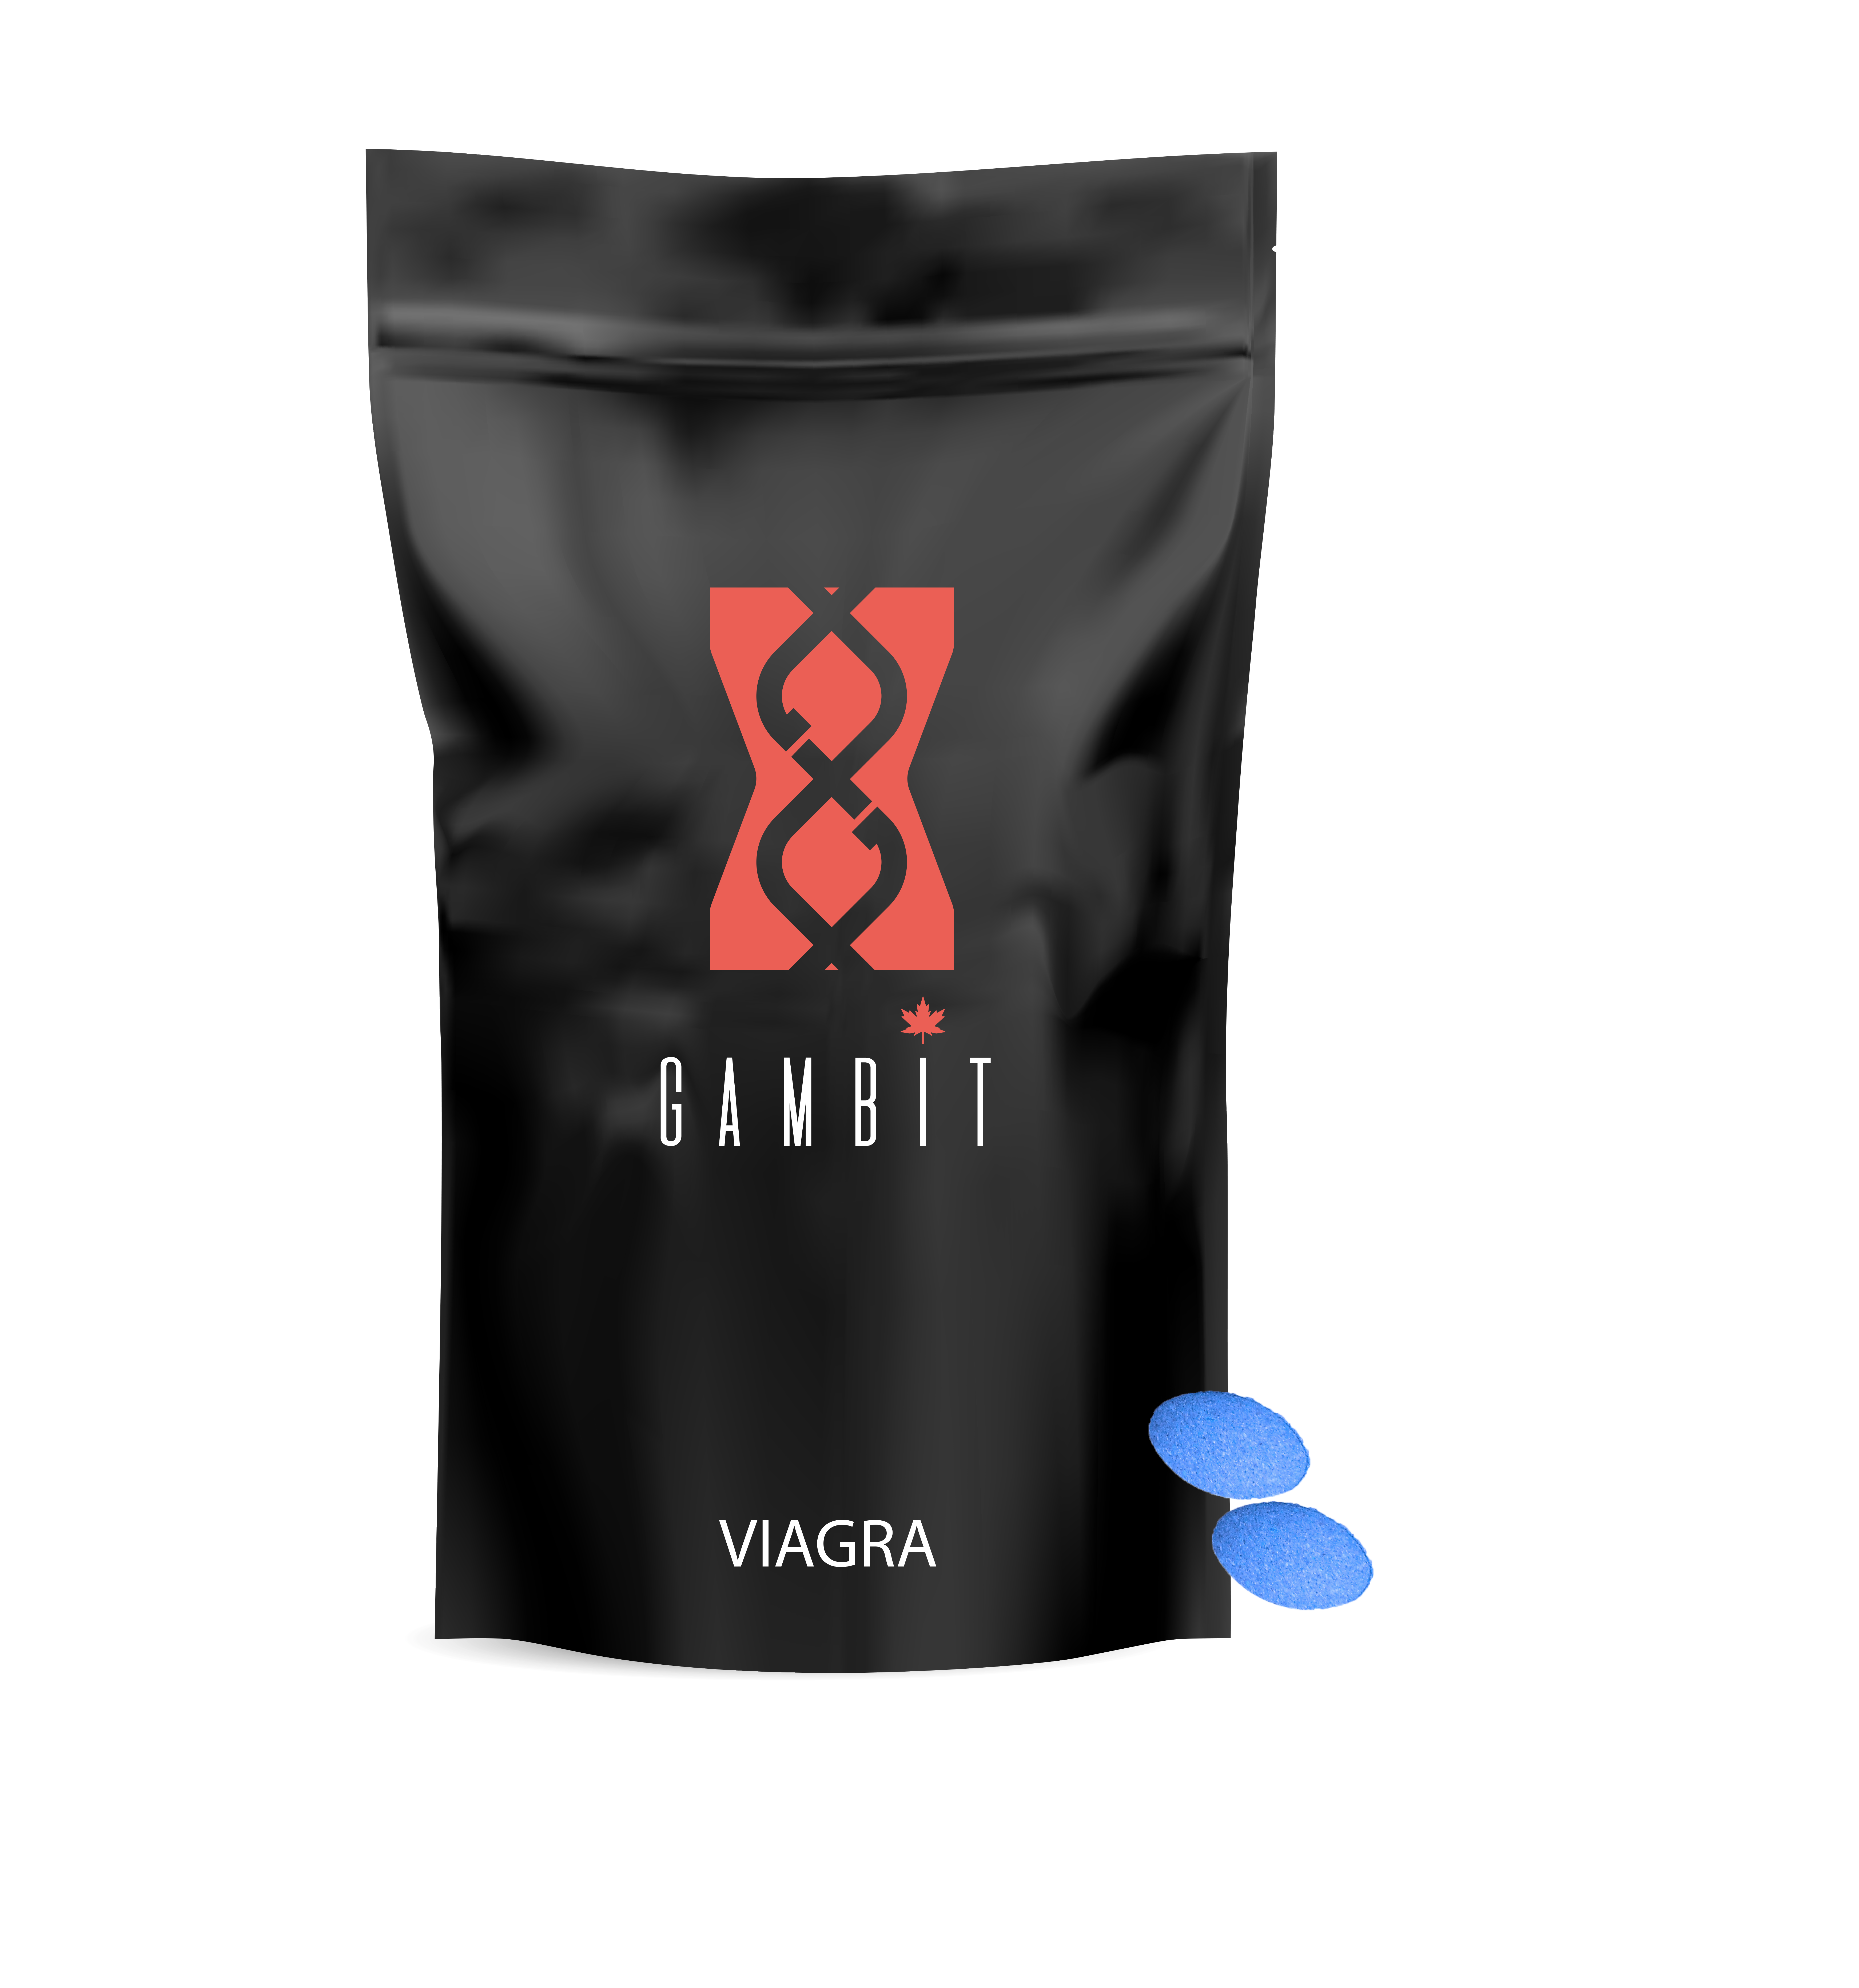 Viagra Packaging